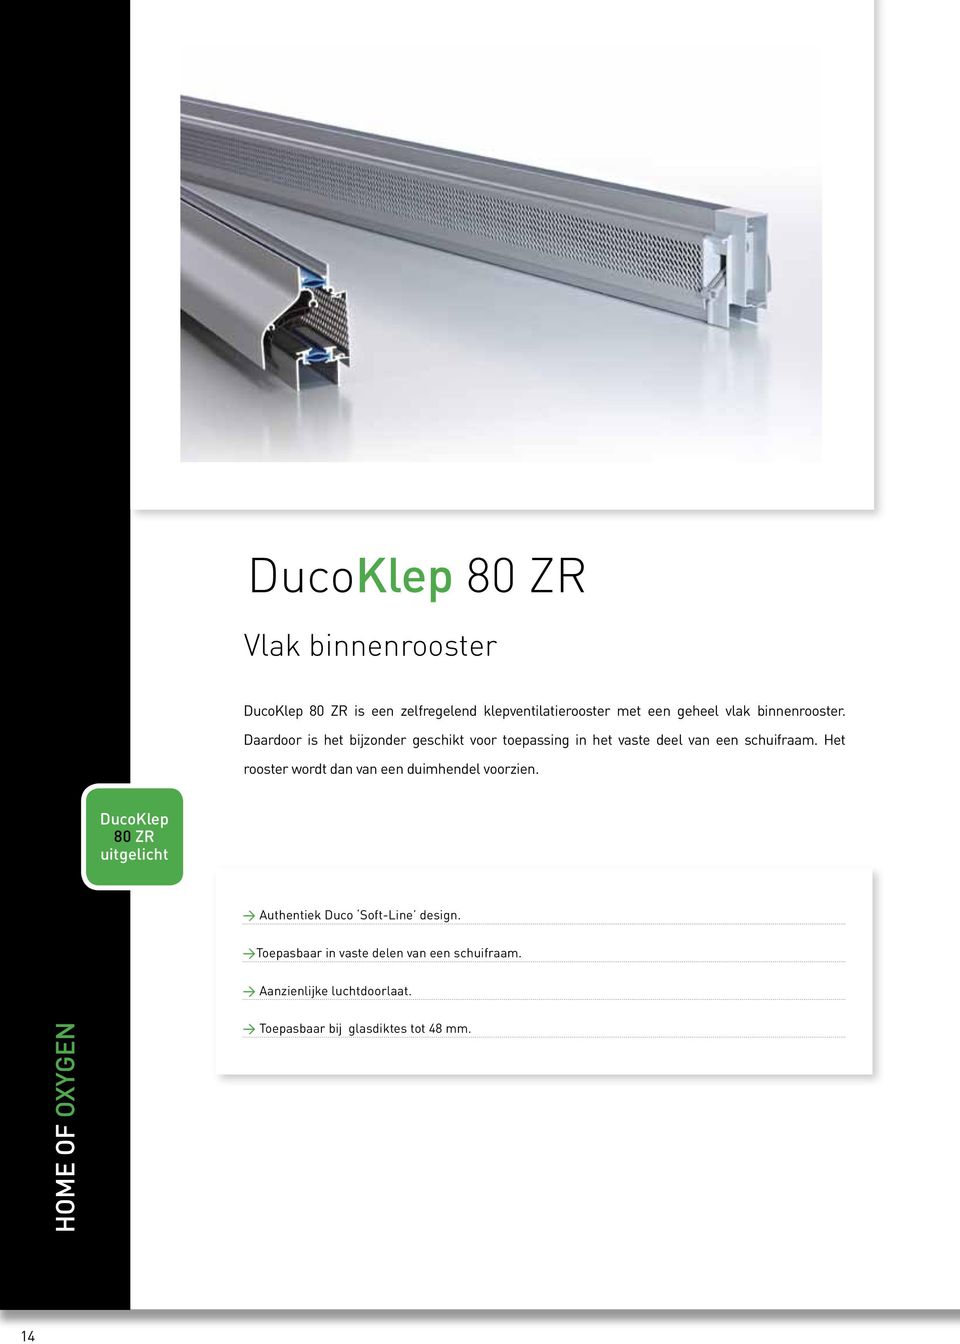 Het rooster wordt dan van een duimhendel voorzien. DucoKlep 80 ZR uitgelicht > Authentiek Duco Soft-Line design.